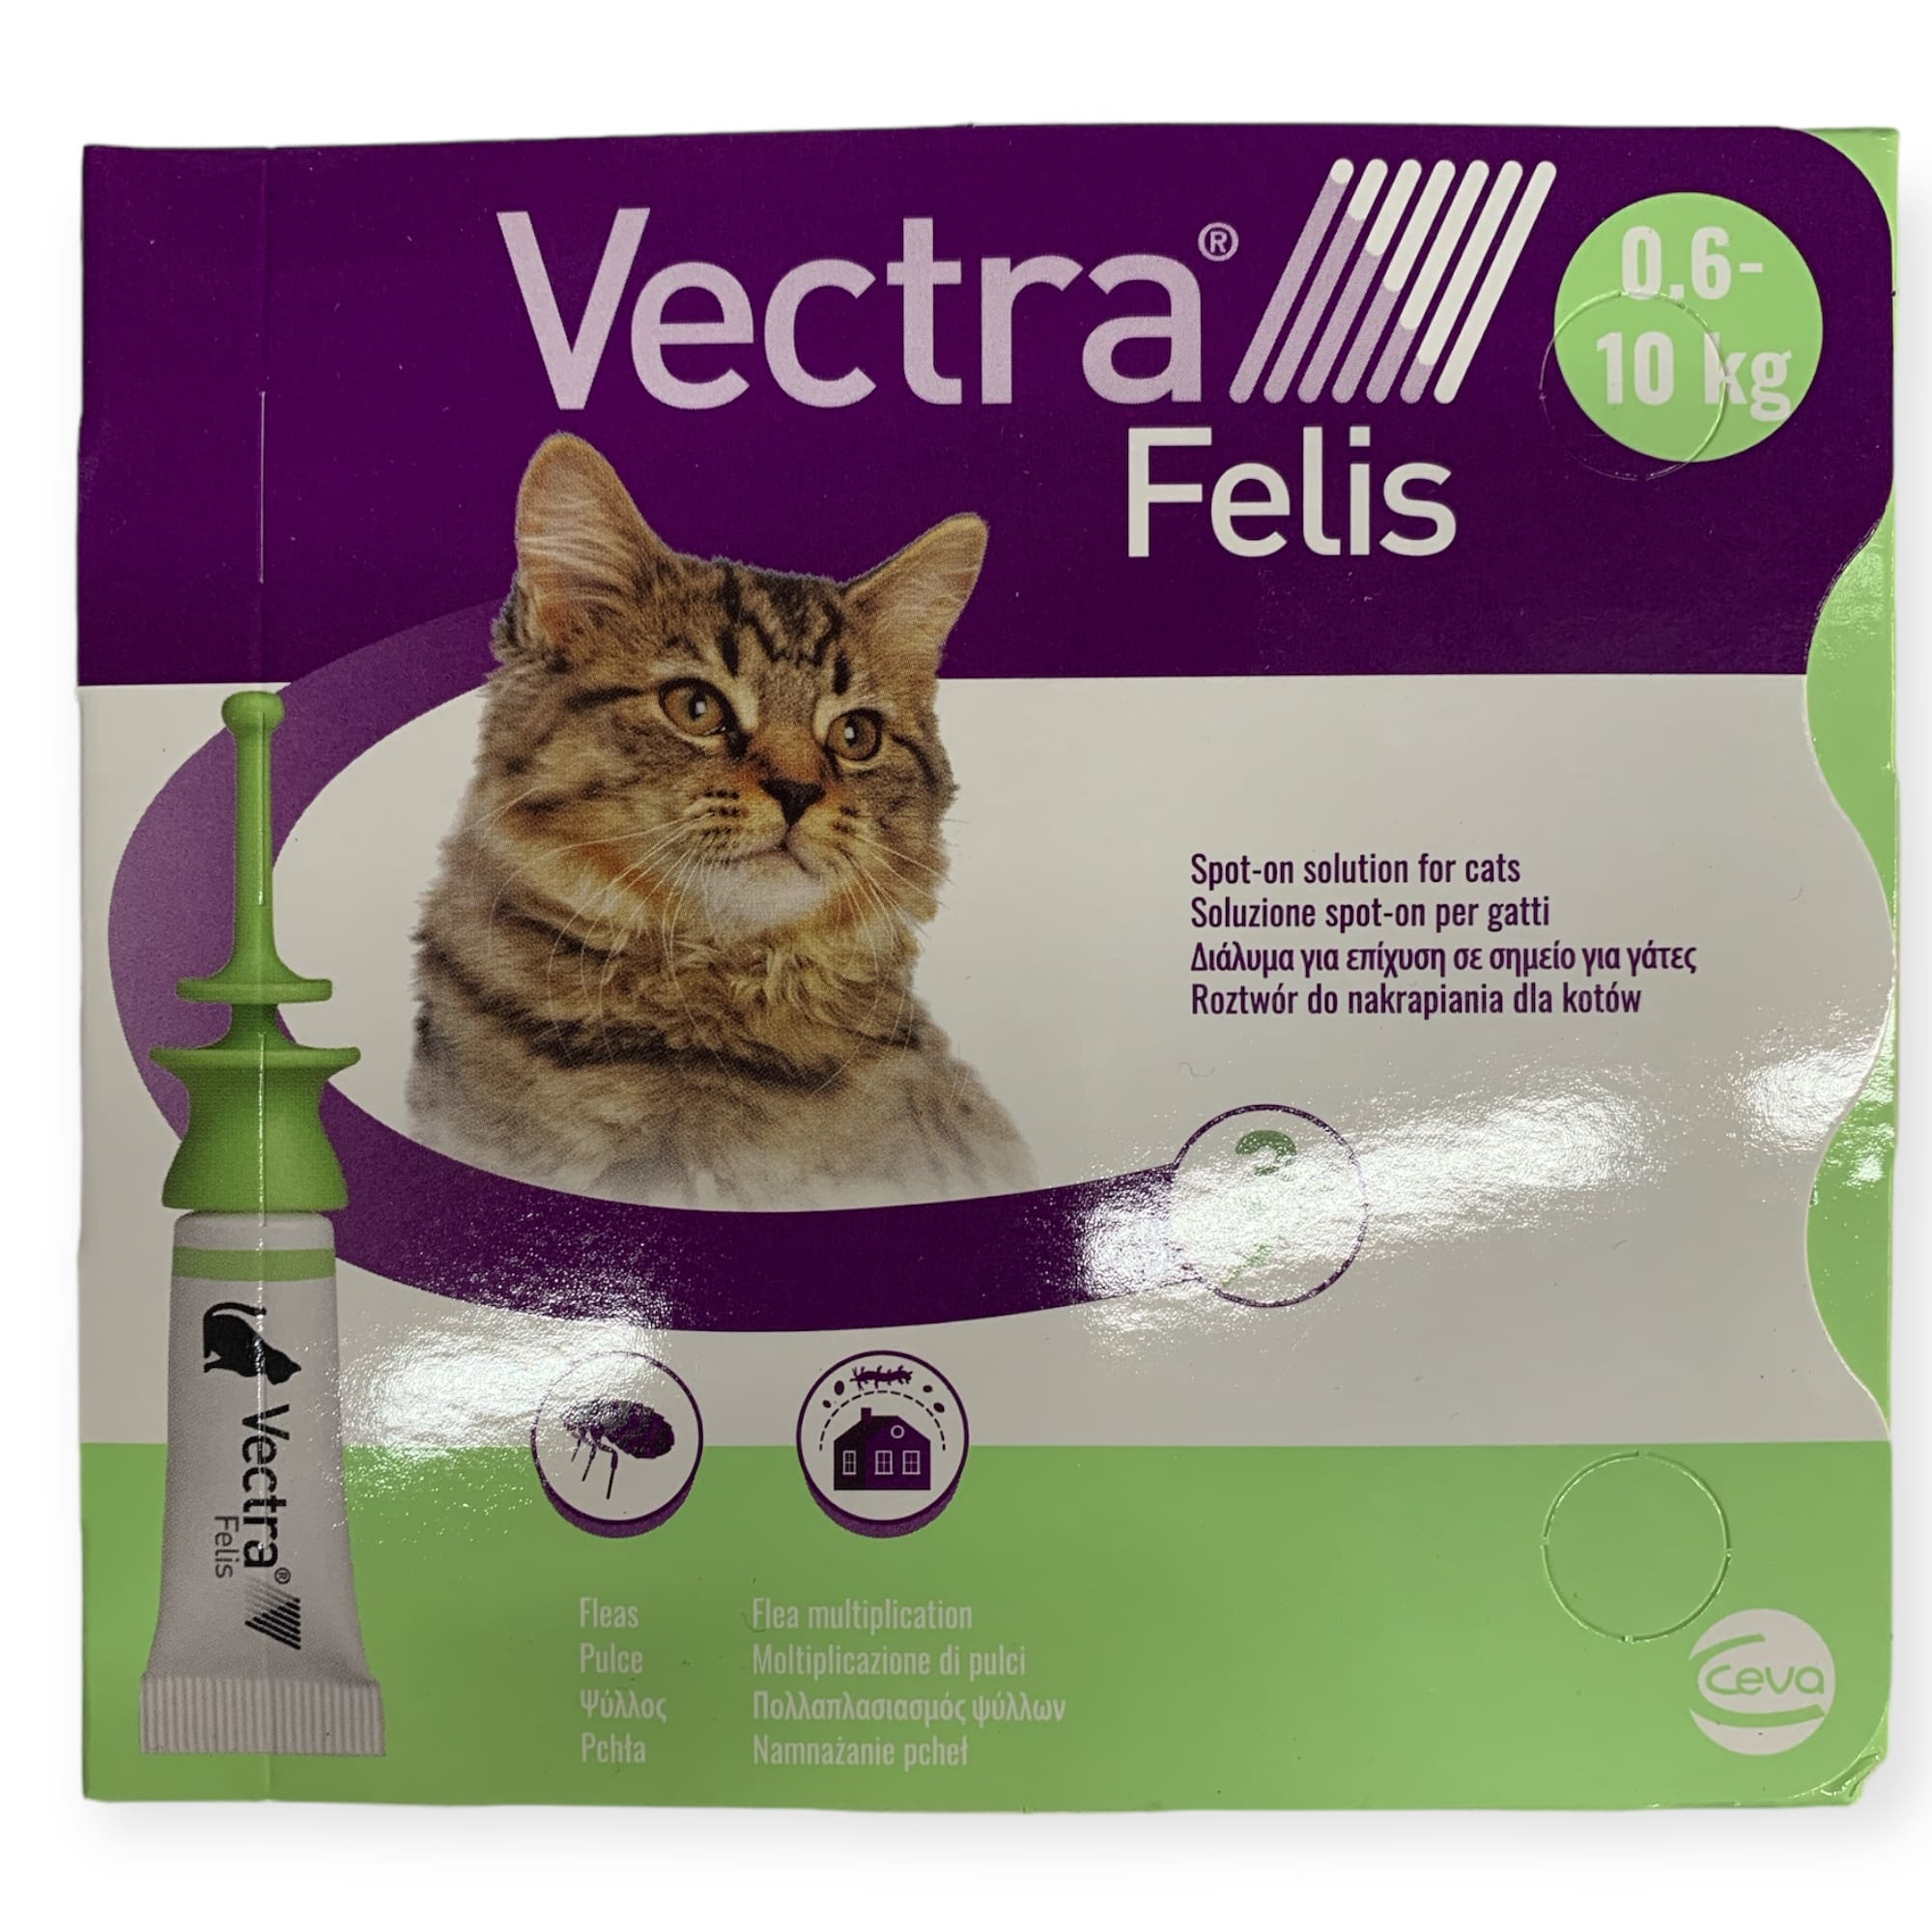 Vectra Feline – אמפולות למניעת פרעושים בחתולים